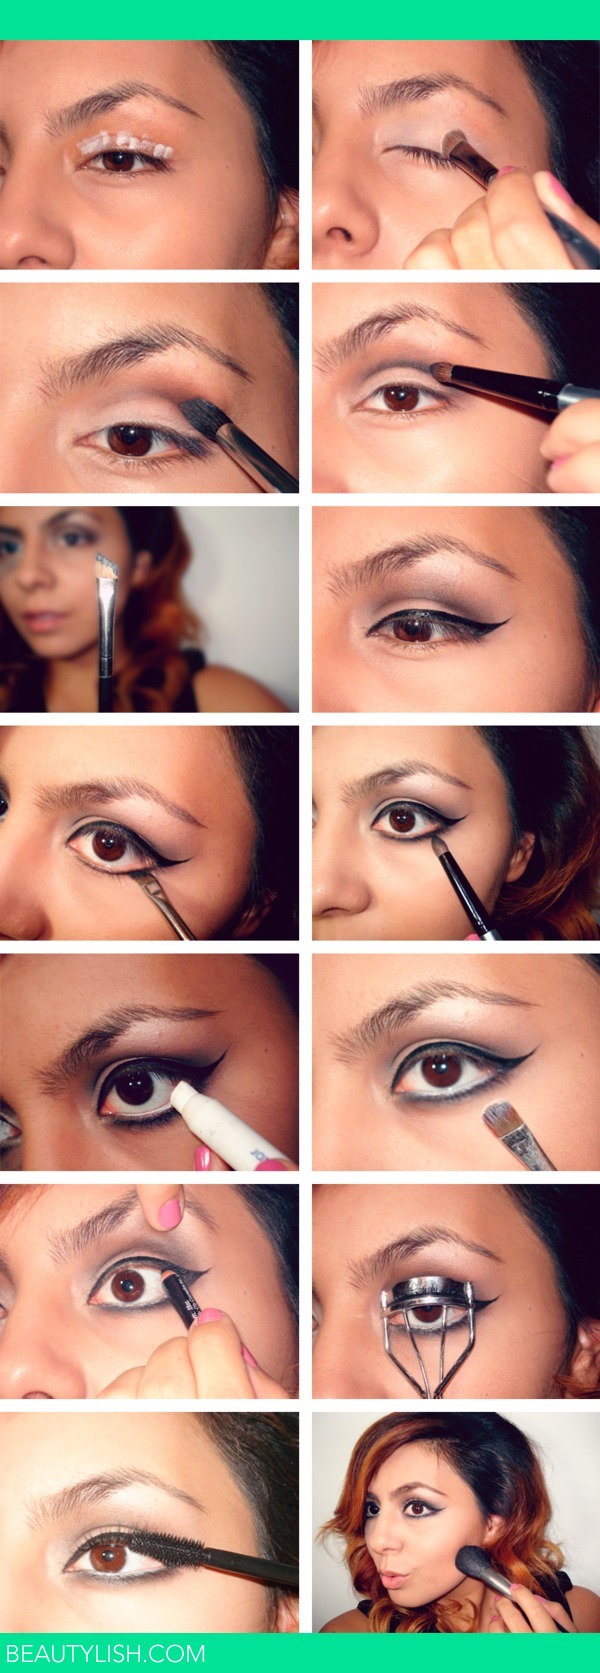 How To Lana Del Rey Makeup | Ilse D.'S (Ilsede) Photo | Beautylish